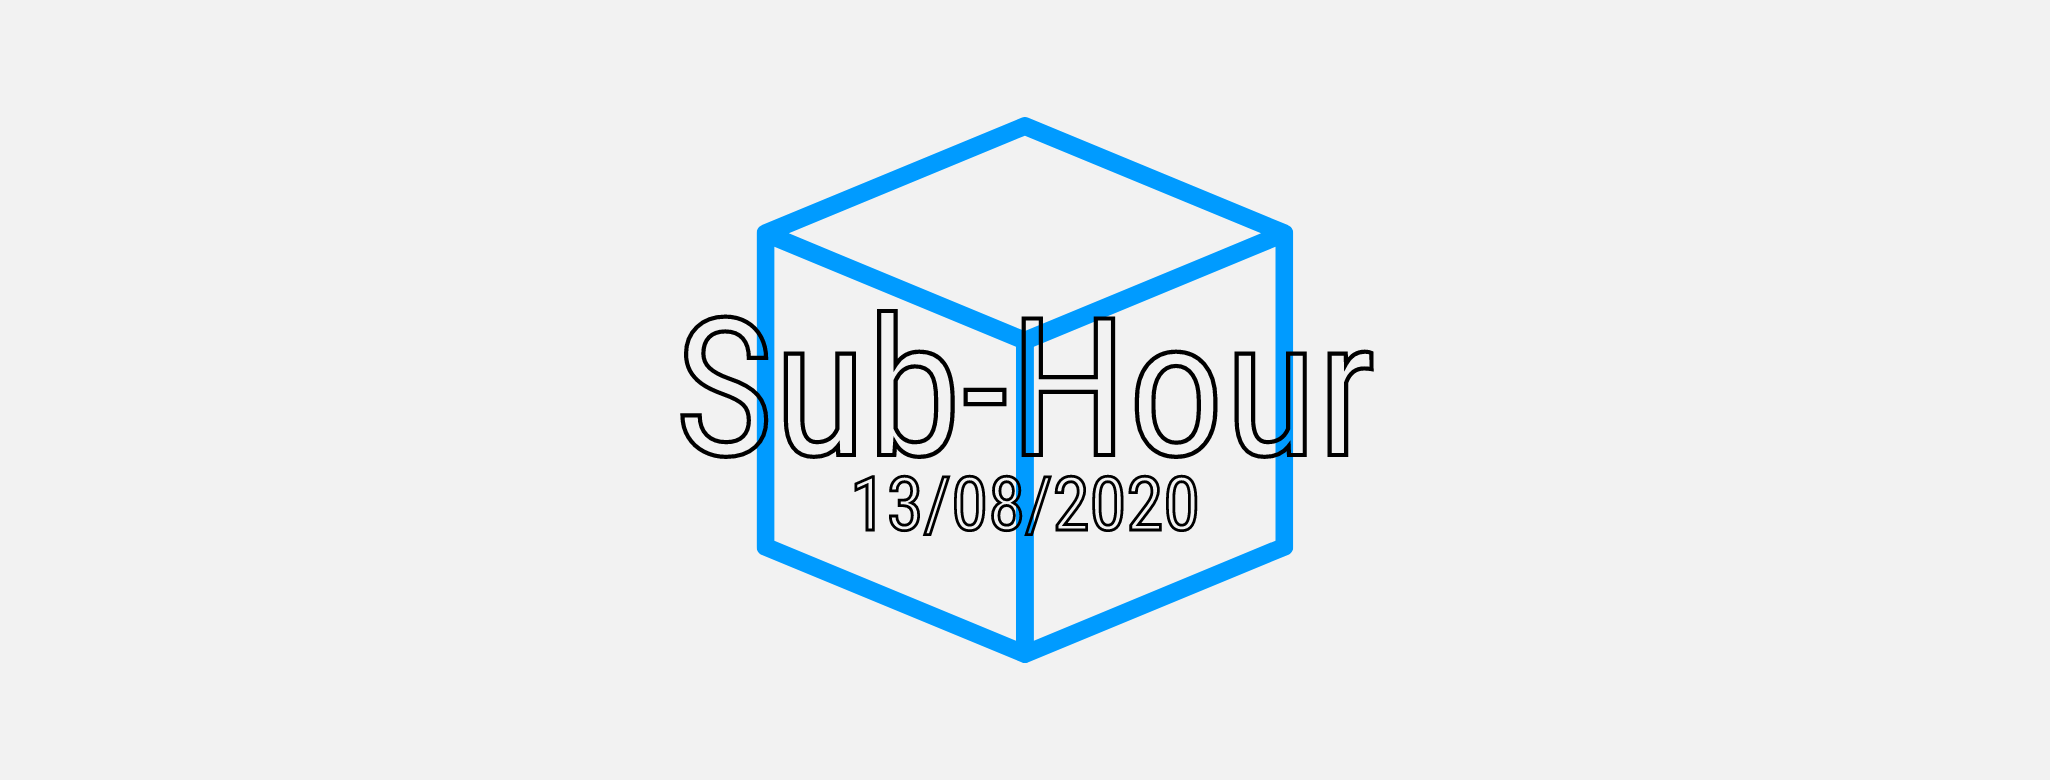 Sub-Hour